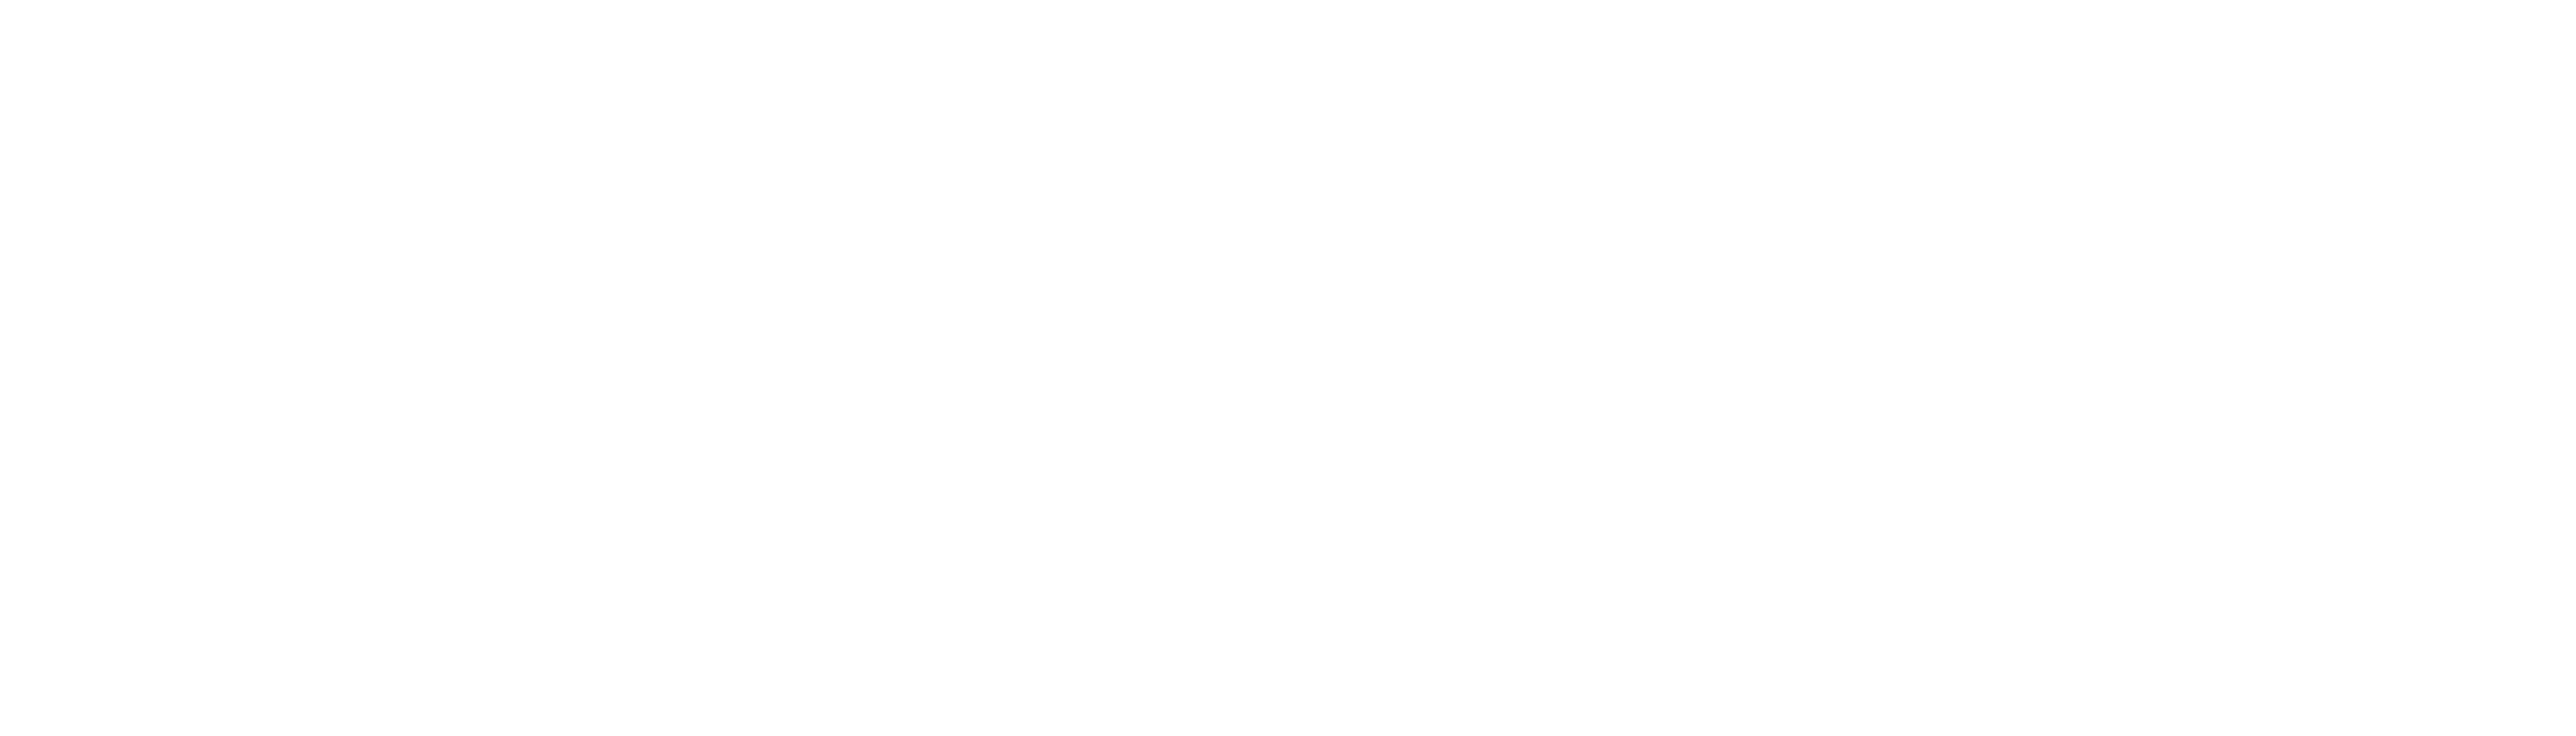 禹城市新達塑膠有限公司_Logo